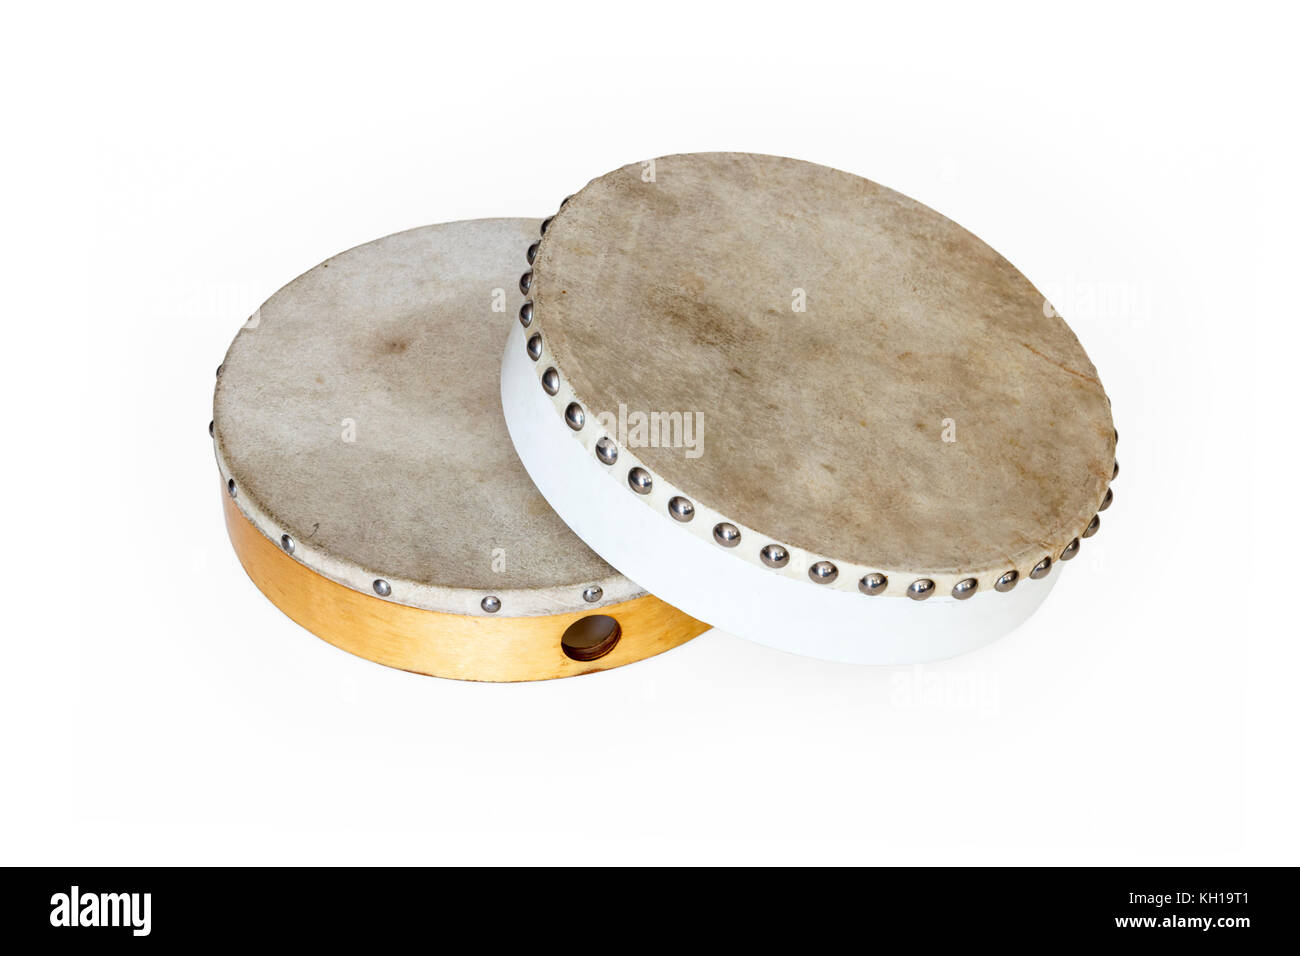 Zwei traditionelle Tambour Drums, eine weiße eine natürliche Holz Farbe, vor einem weißen Hintergrund Stockfoto